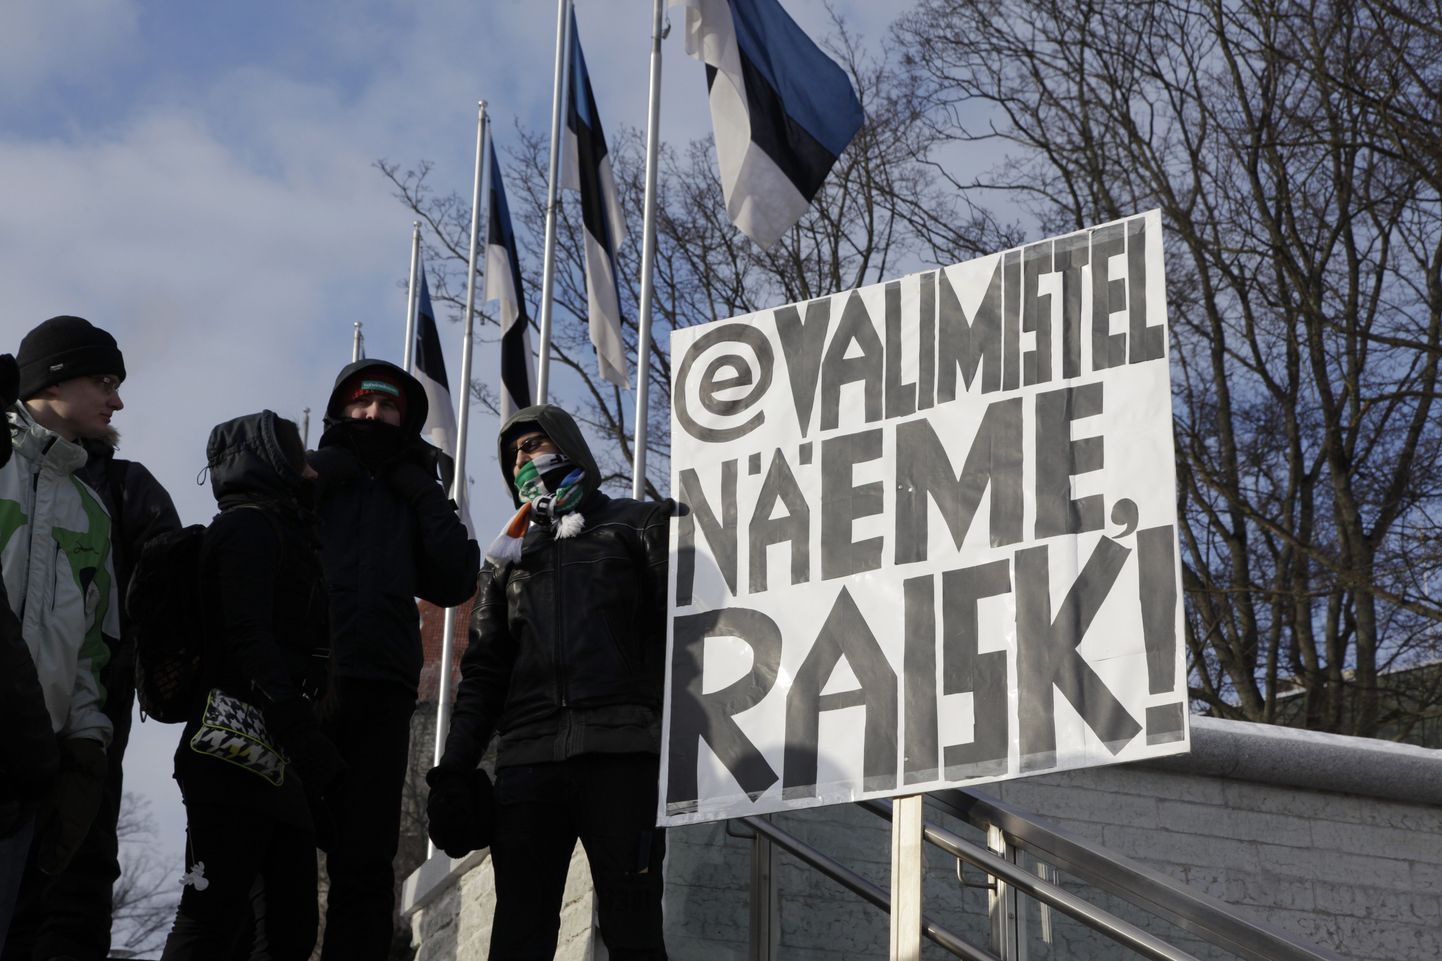 Недавний митинг против ACTA в центре Таллинна. Надпись на плакате (возможно, относящаяся к правящей коалиции): "На электронных выборах увидим, зараза!"